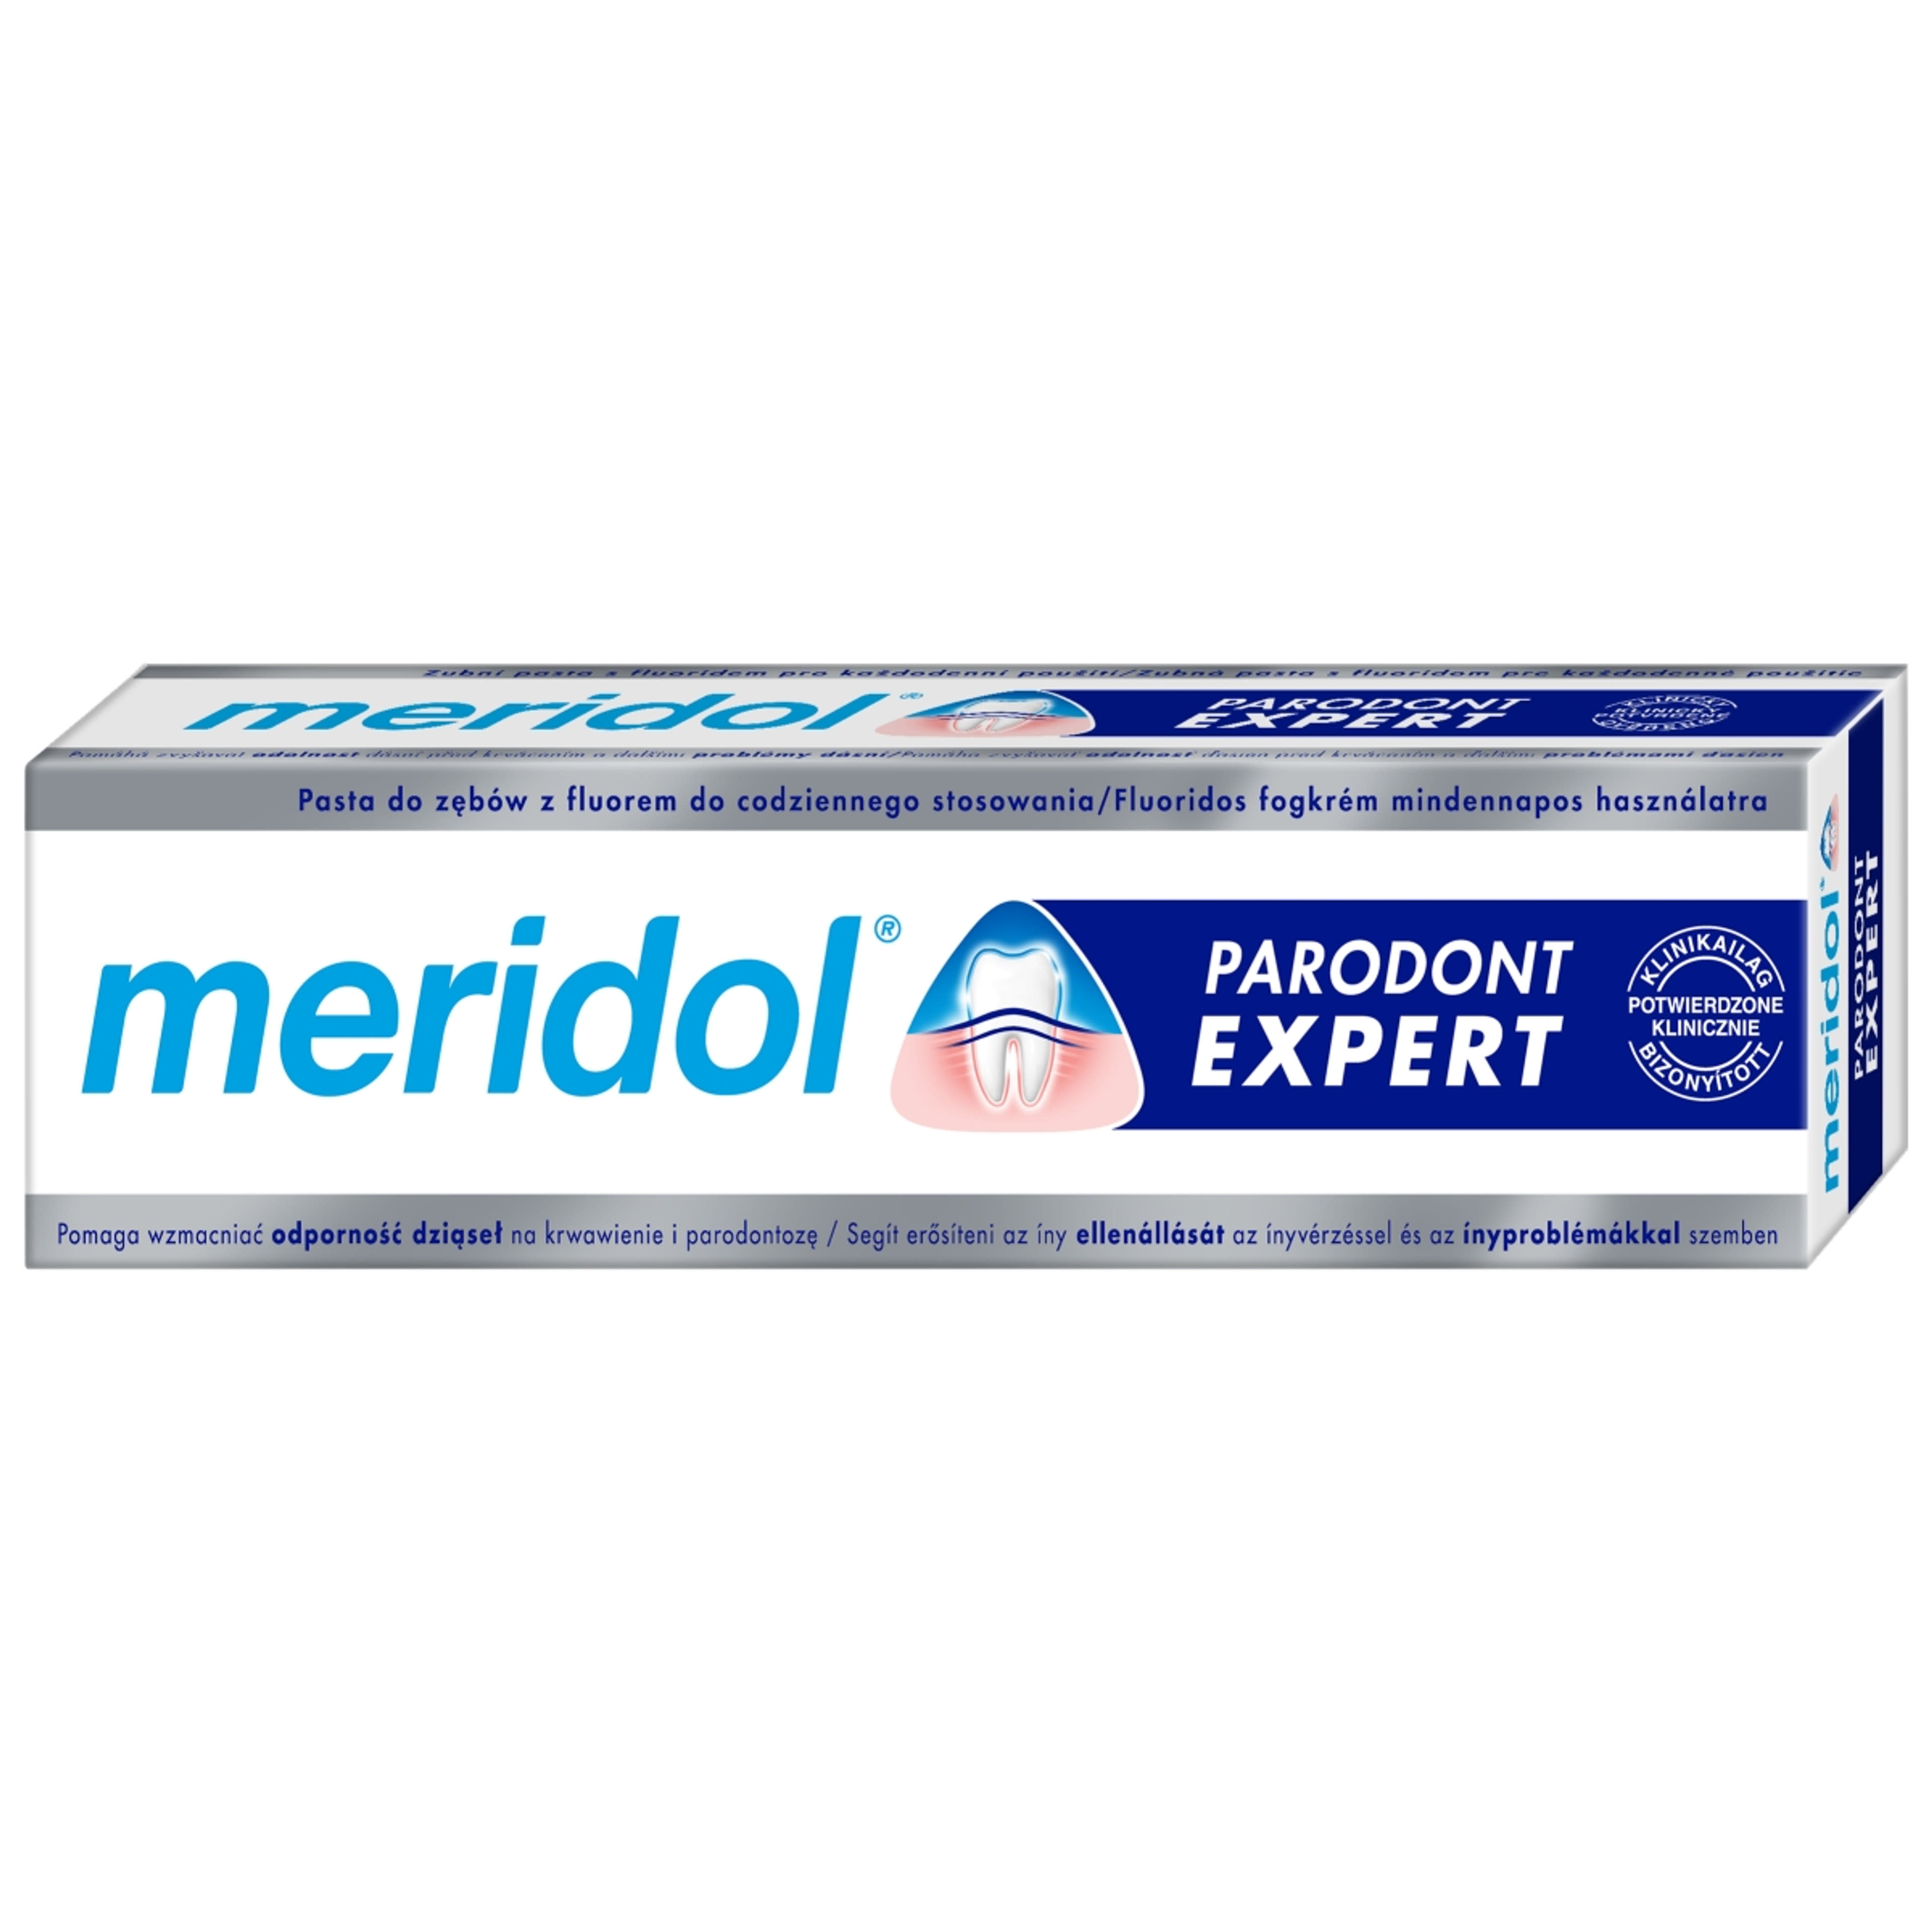 Meridol Paradont Expect fogkrém - 75 ml-6